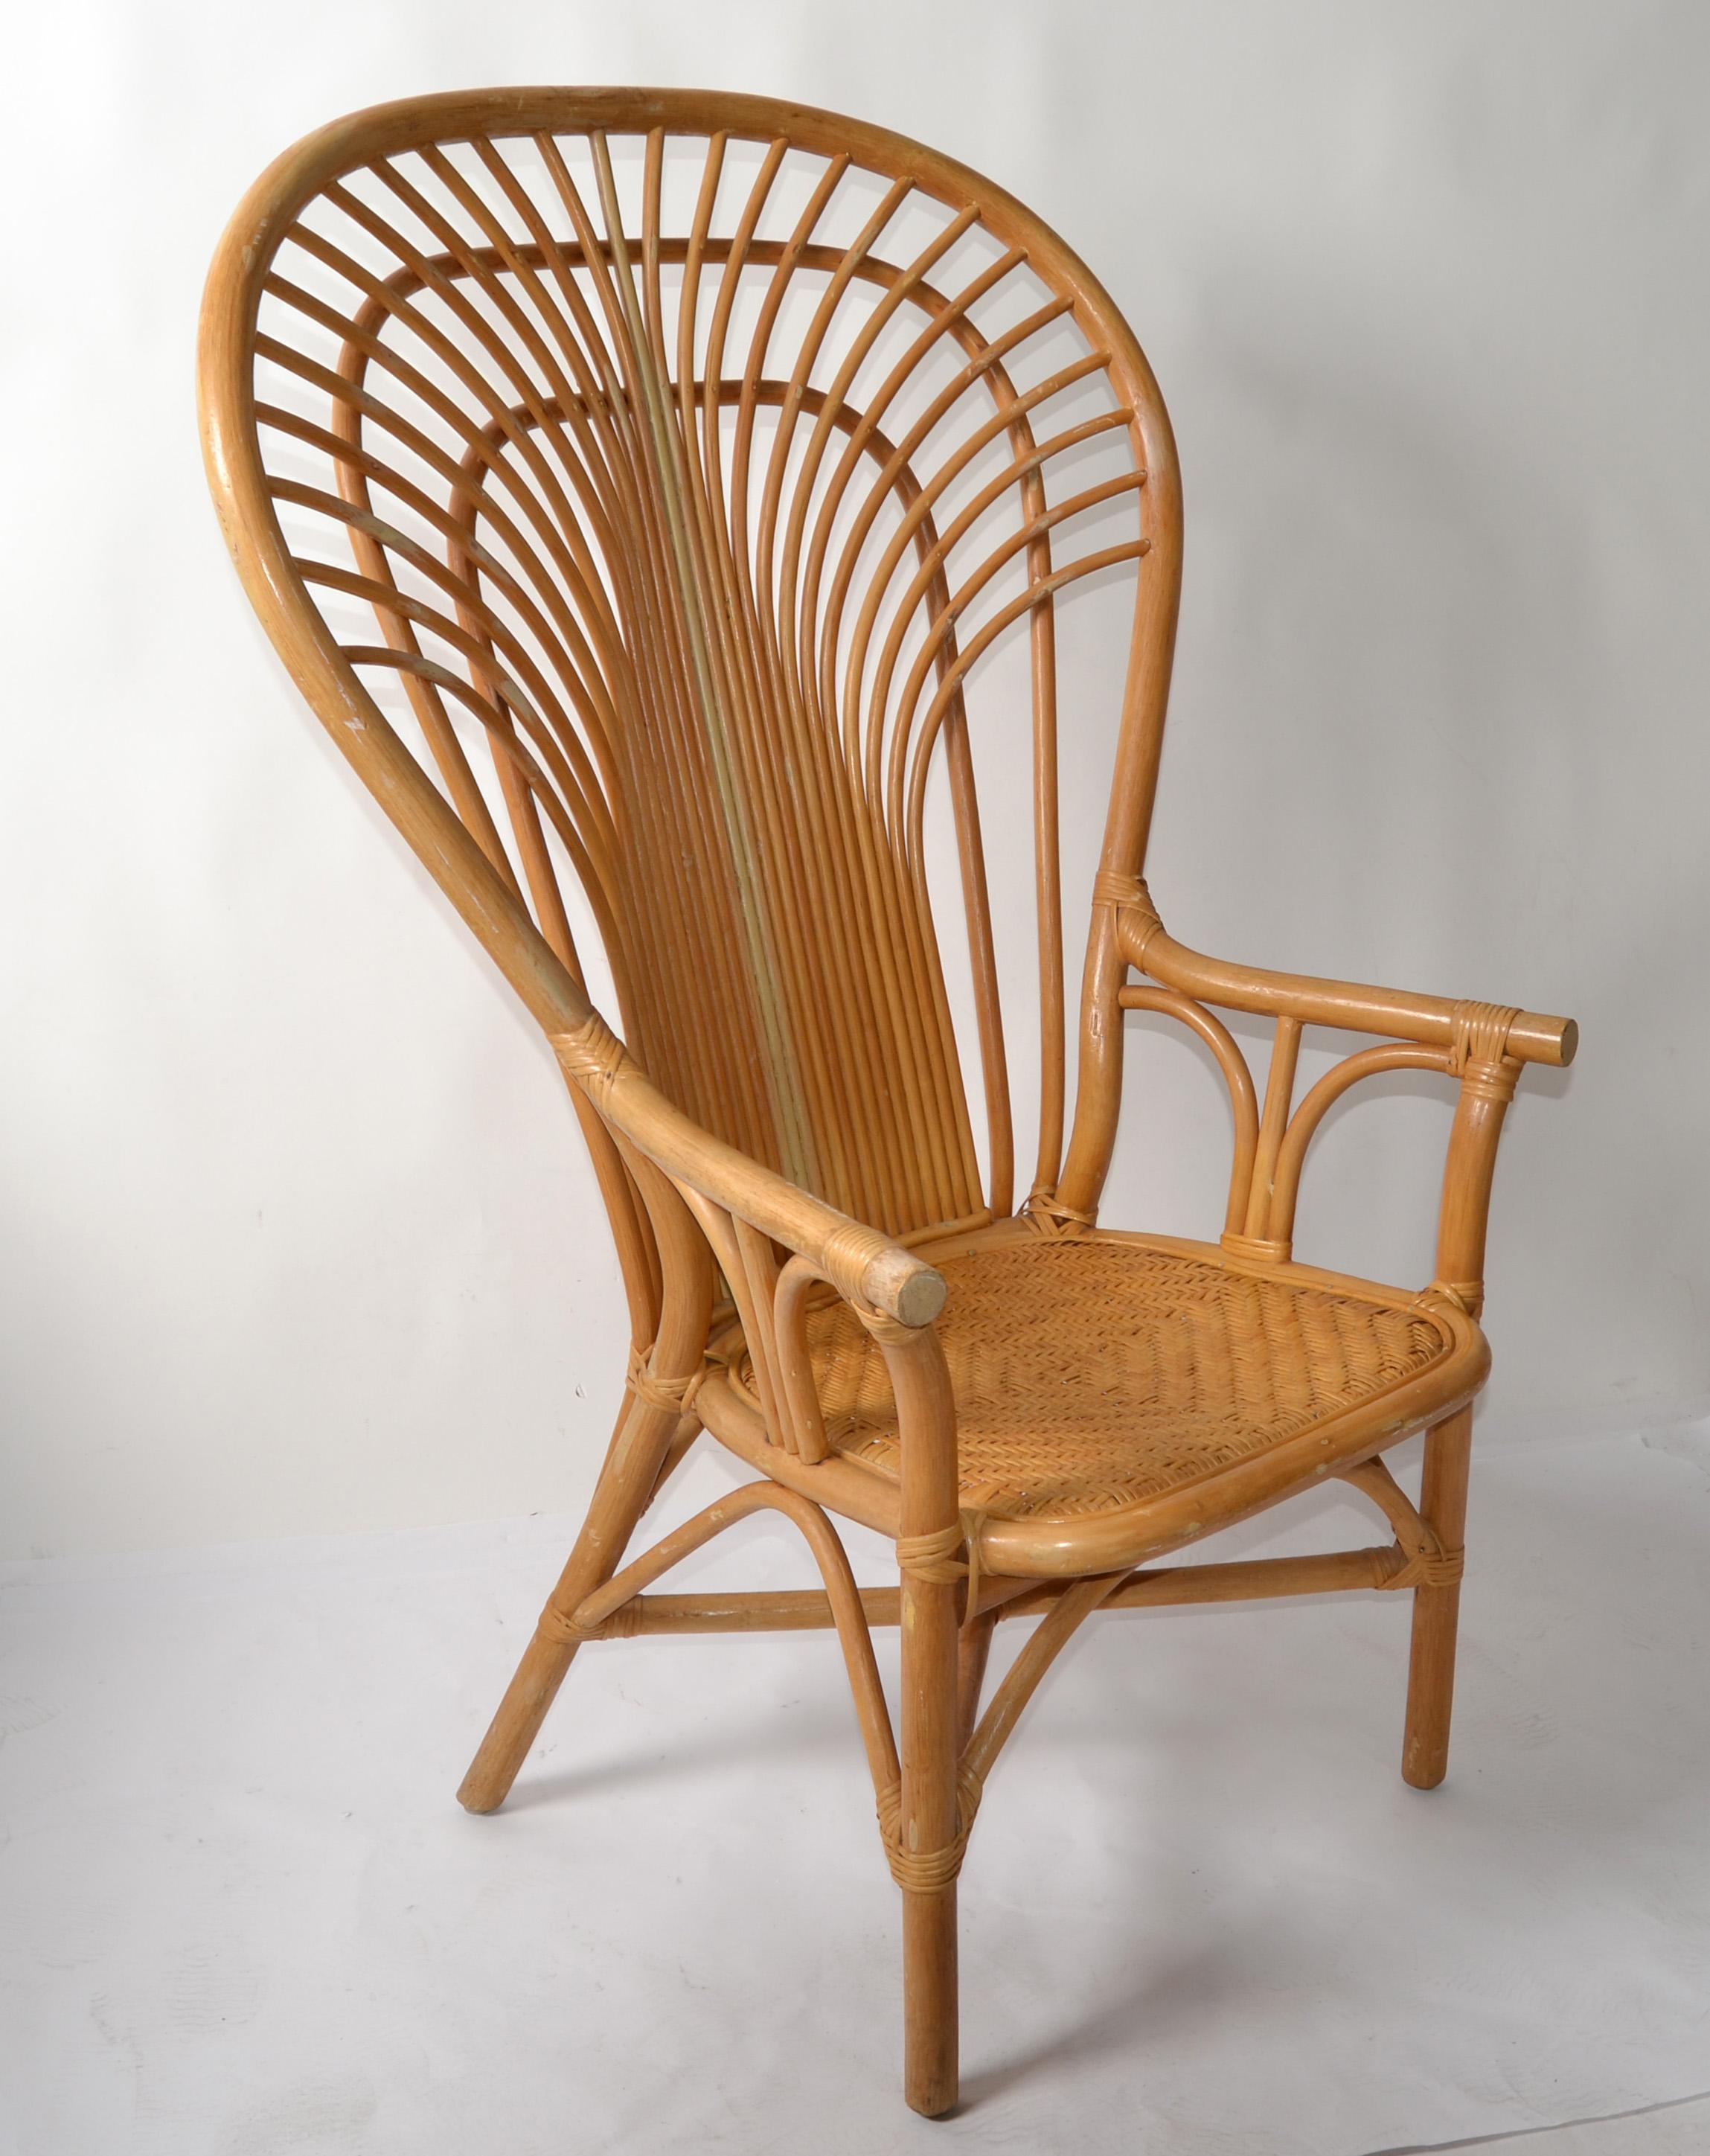 Superbe chaise paon vintage Boho Chic tissée à la main Beige Wingback des années 1970.
Fabriqué en osier de bambou, en rotin et en roseau fendu, le siège est tressé à la main.
Label en feuille d'or à la base, fabriqué aux Philippines. 
Idéal pour un